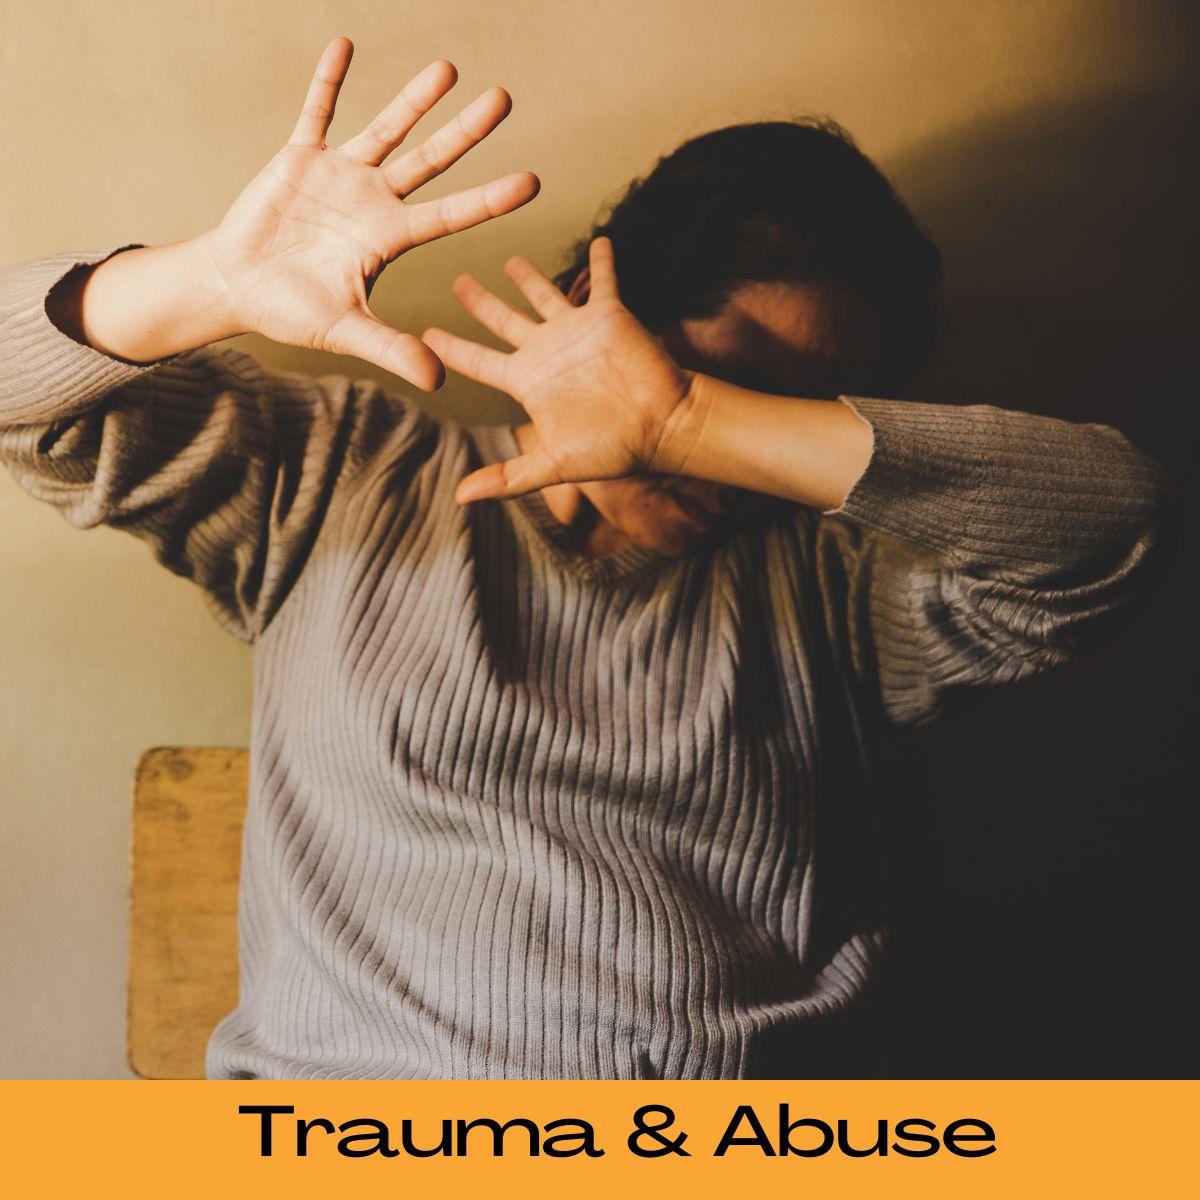 Trauma & Abuse